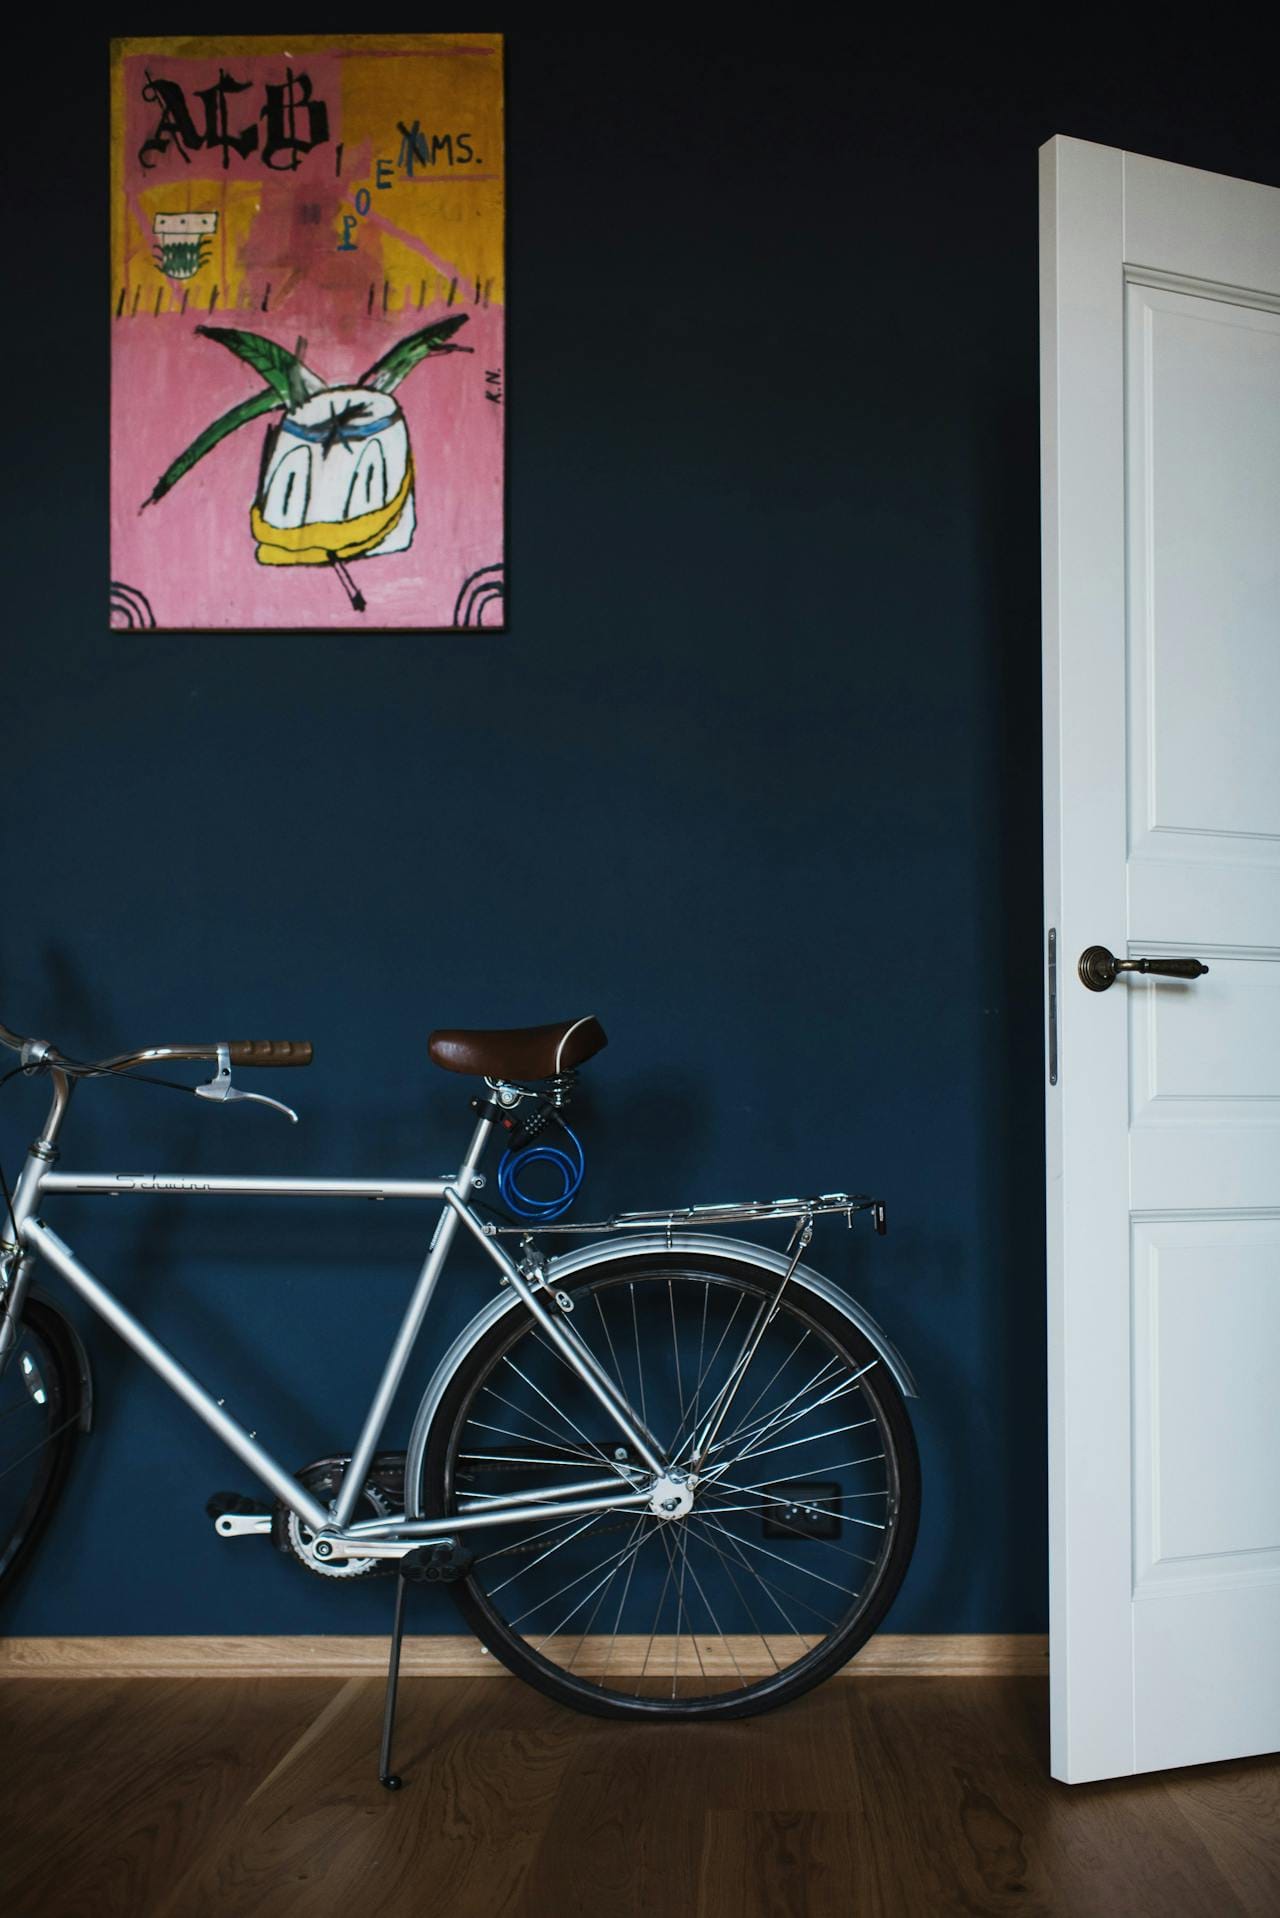 Fahrrad gegen eine tiefblaue Wand